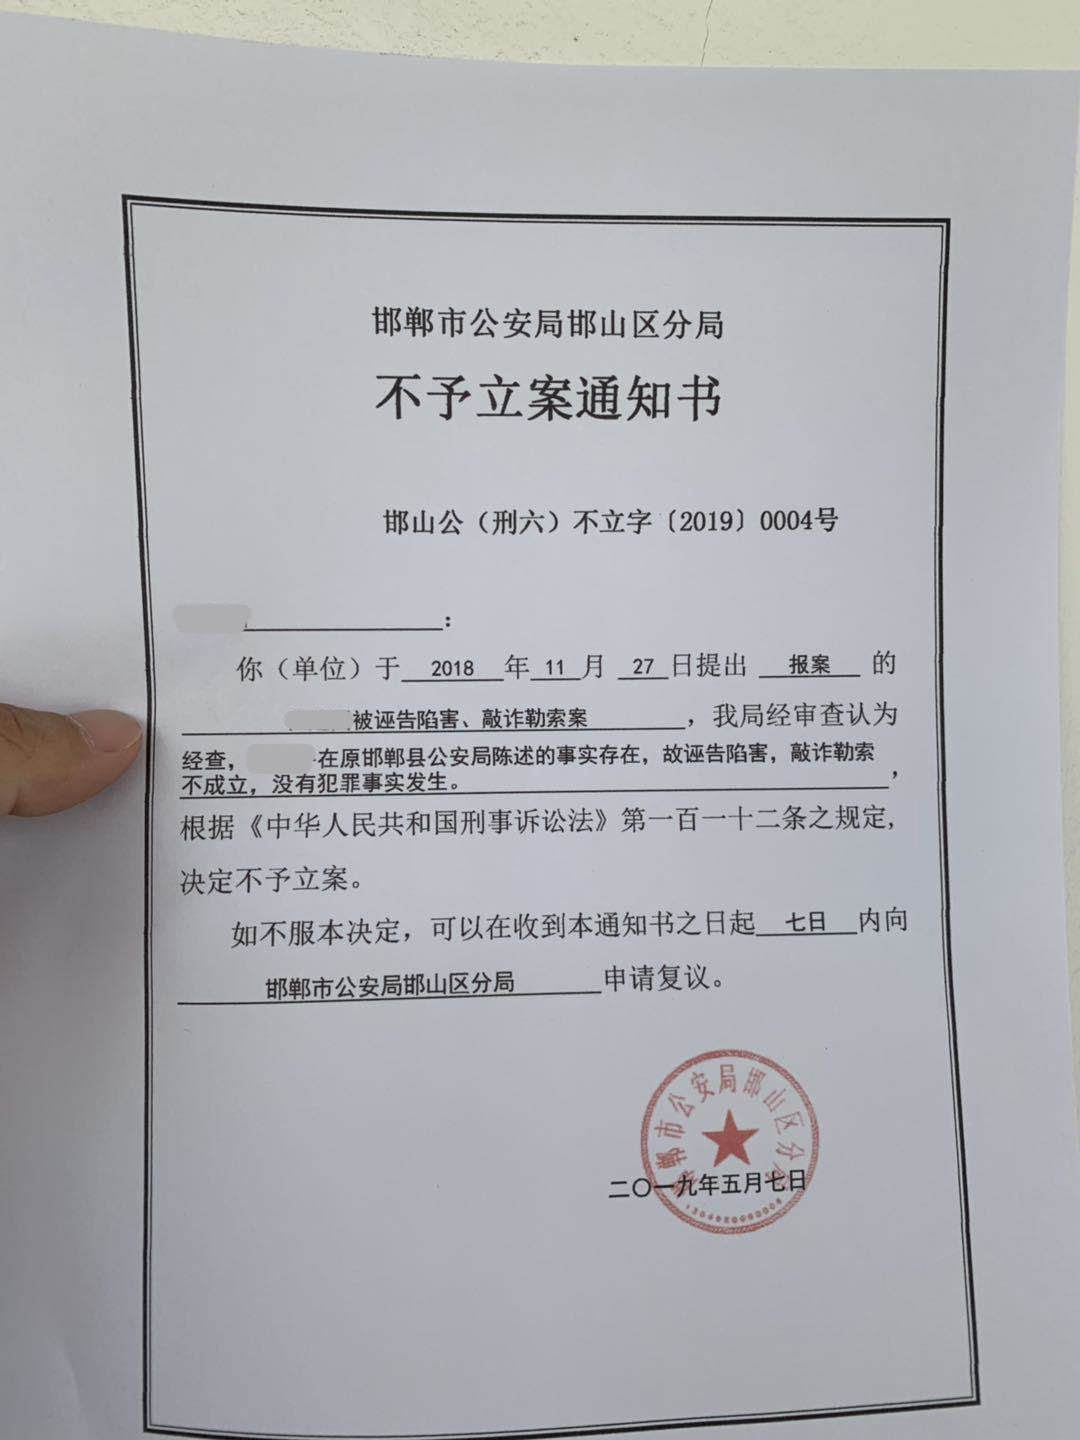 报案近半年能否立案有果:邯郸警方不予立案 当事人申请复议